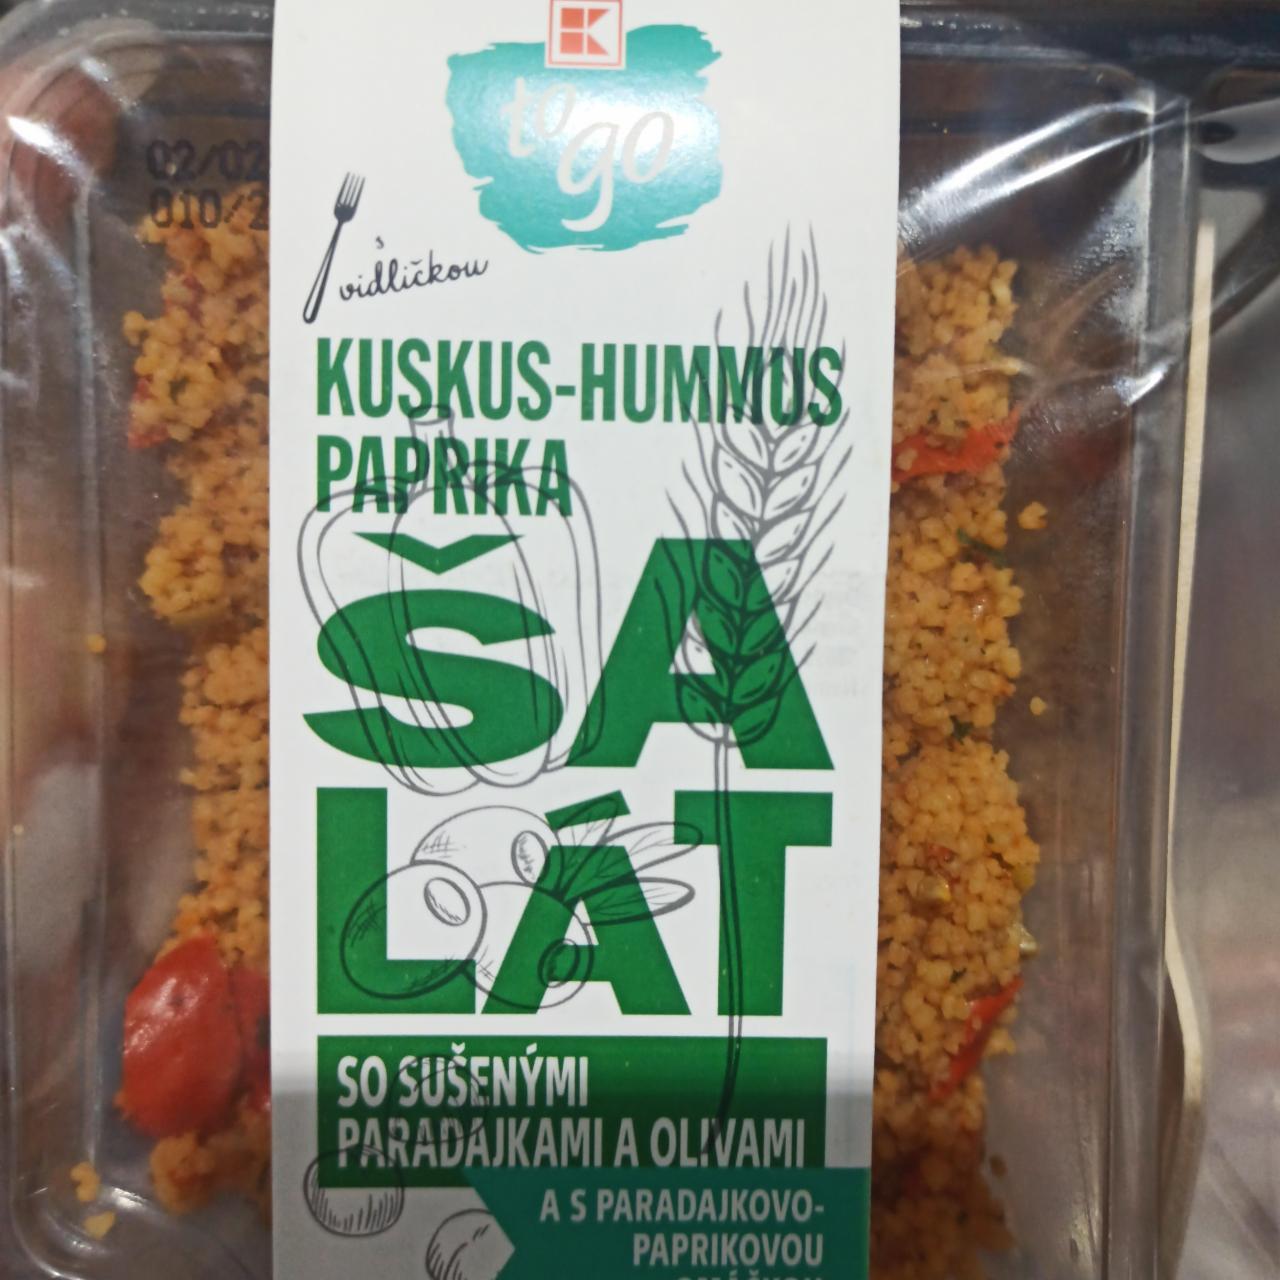 Fotografie - Kuskus-hummus paprika šalát so sušenými paradajkami a olivami K To go